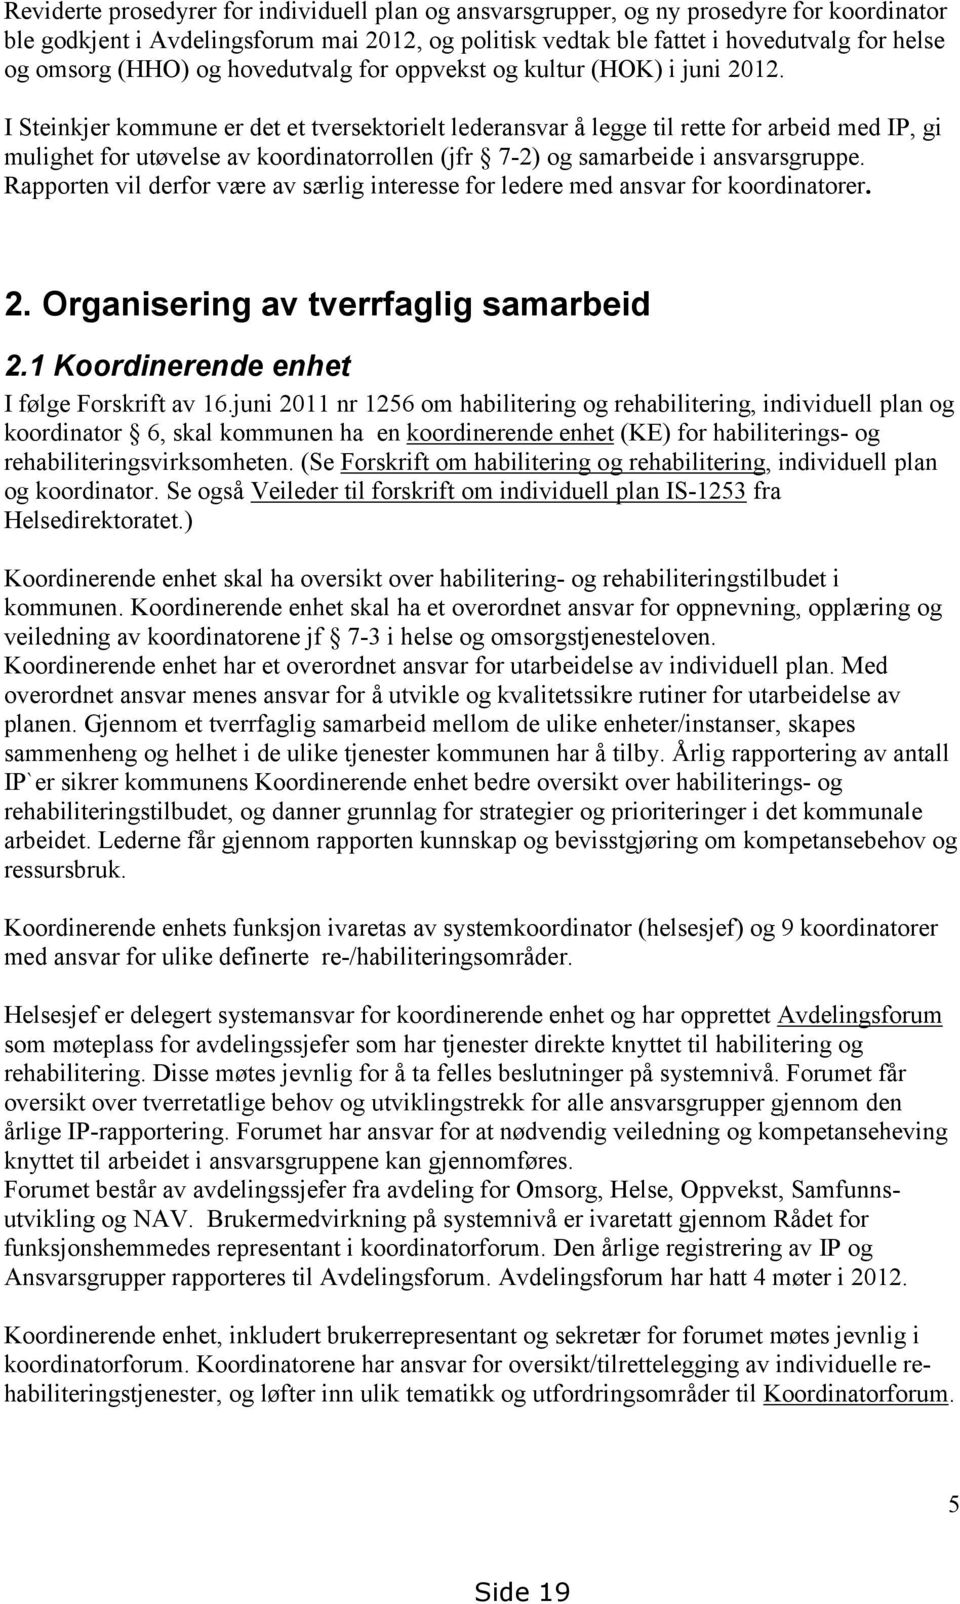 I Steinkjer kommune er det et tversektorielt lederansvar å legge til rette for arbeid med IP, gi mulighet for utøvelse av koordinatorrollen (jfr 7-2) og samarbeide i ansvarsgruppe.